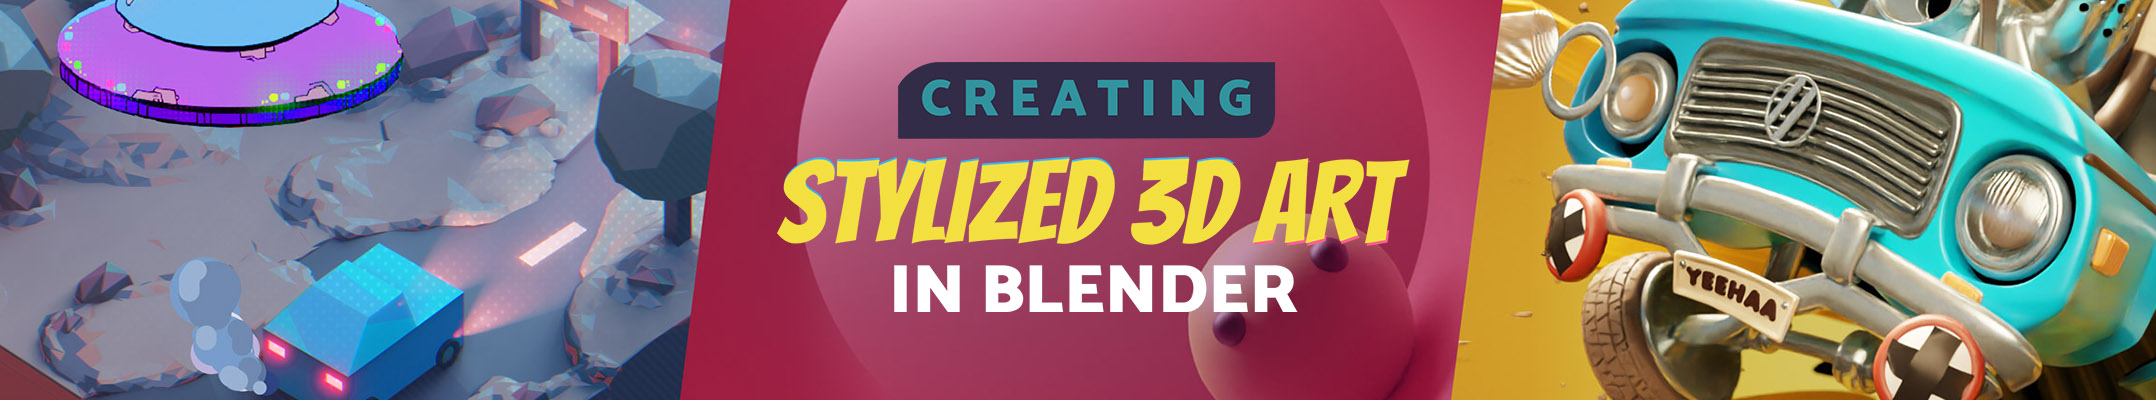 creating_stylized_3d_art_in_blender_2156x400_03